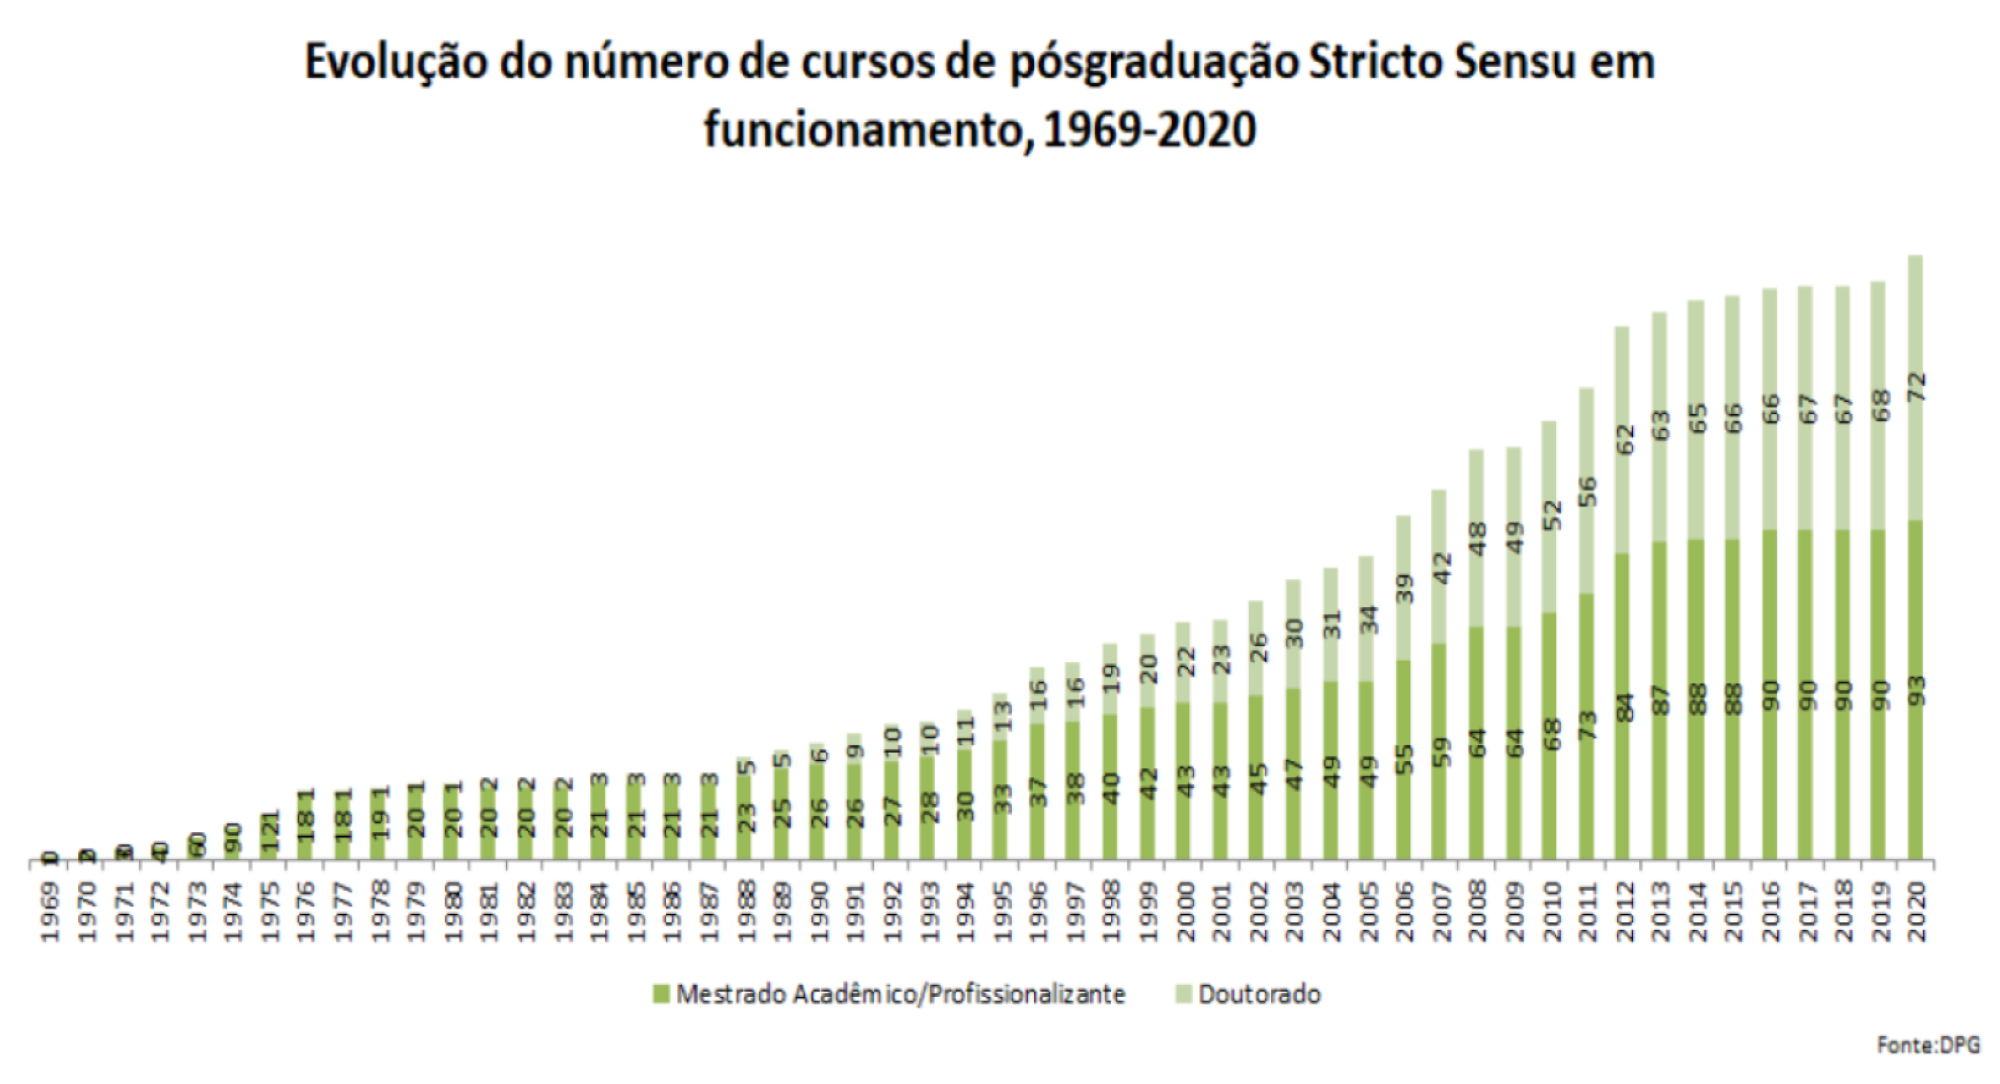 Total de alunos formados por período, UnB, 1969 a 2020